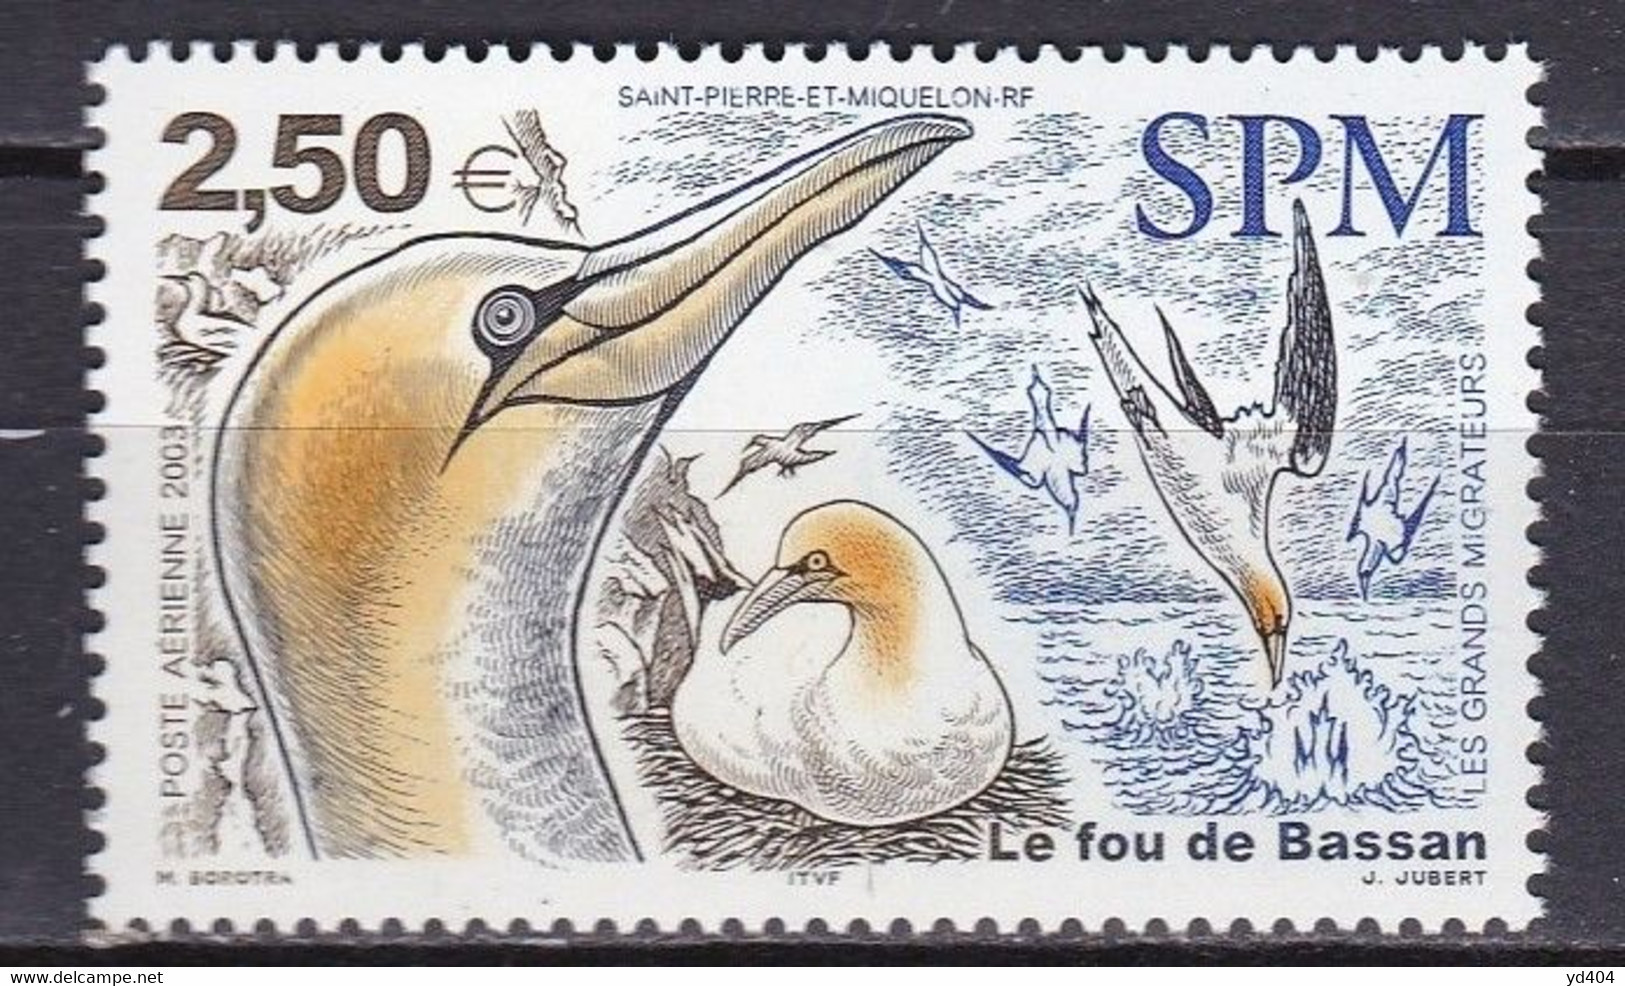 PM-426 – ST PIERRE & MIQUELON – AIRMAIL - 2003 – MIGRATORY BIRDS – Y&T # 83 MNH 10 € - Neufs